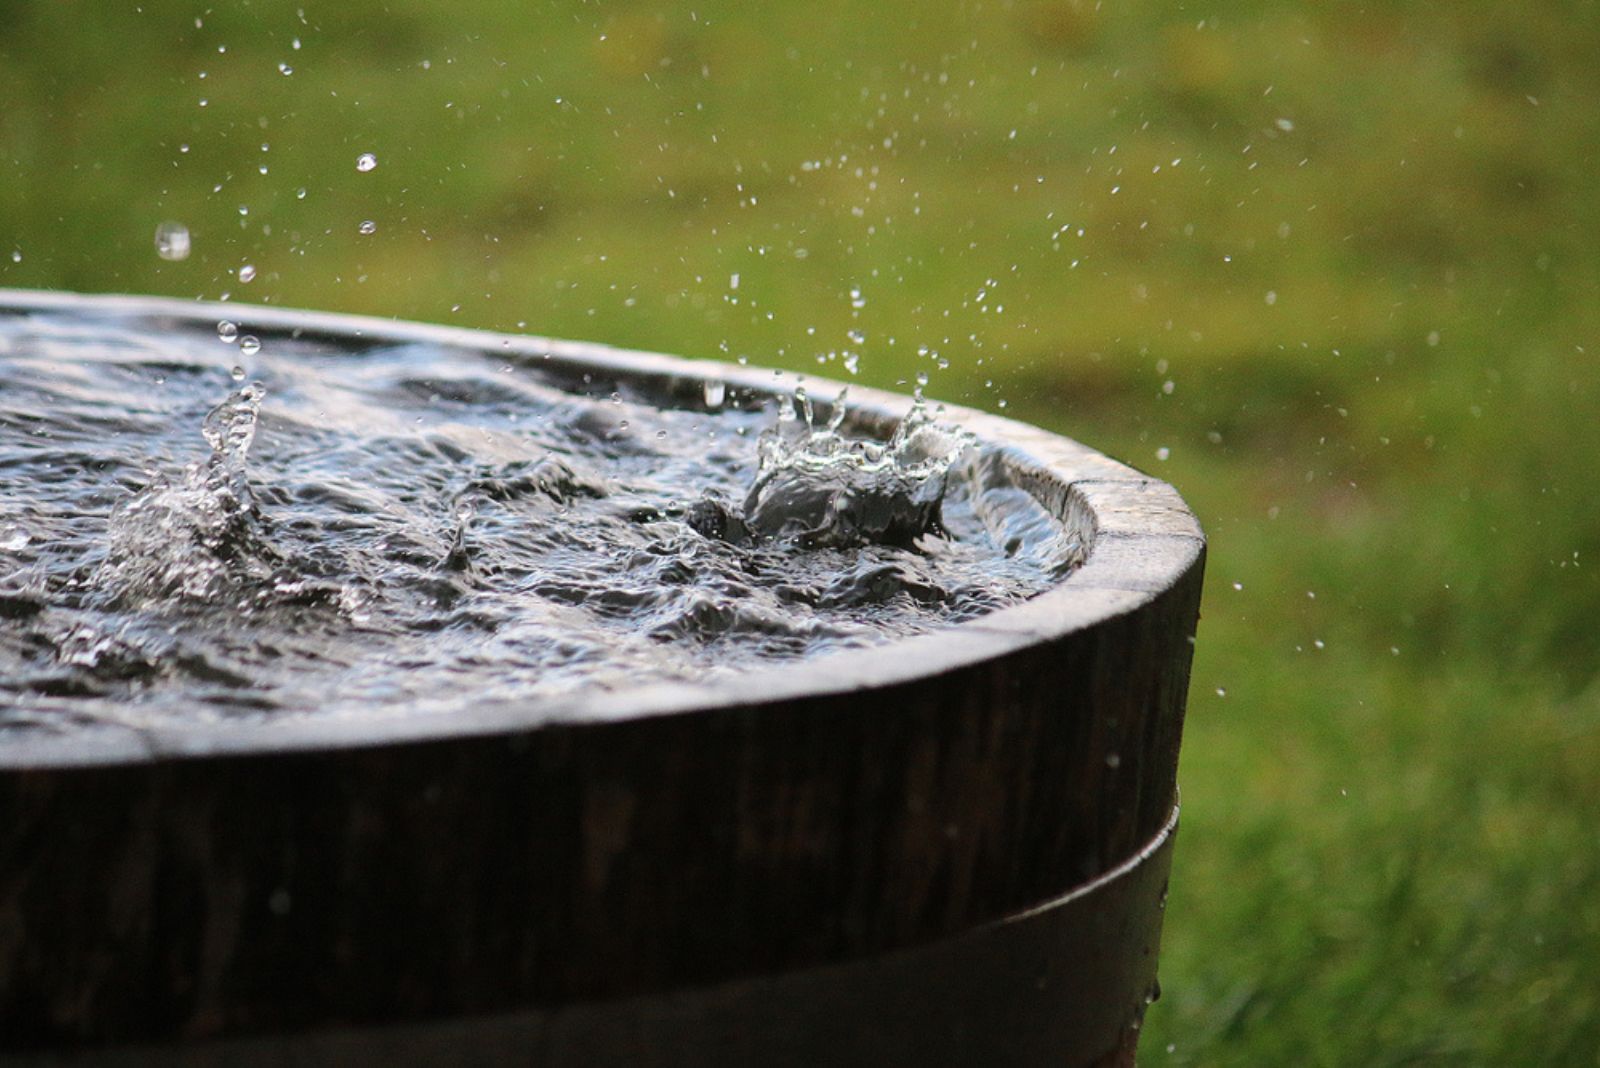 rain is falling in a wooden barrel full of water in the garden